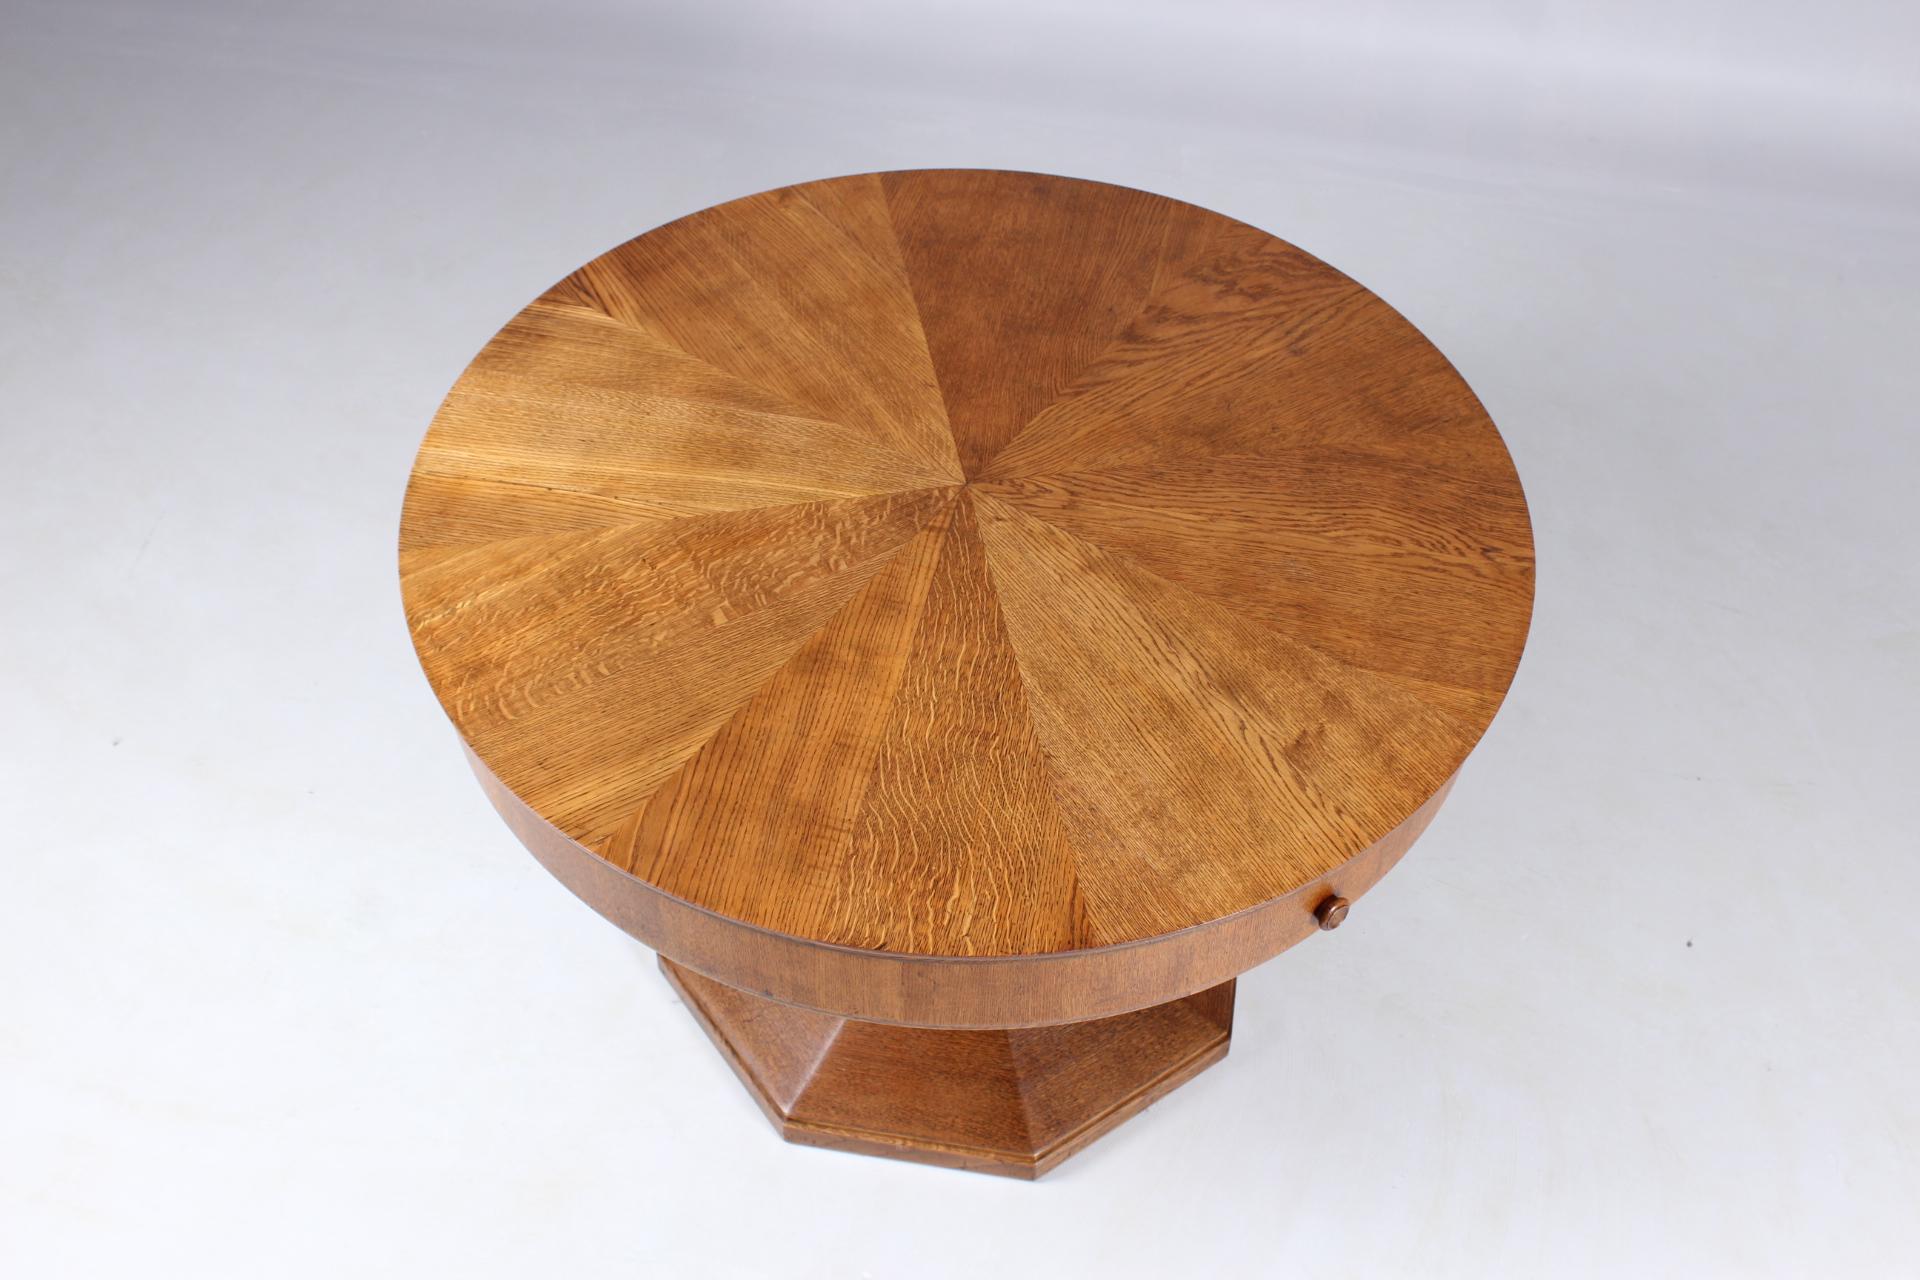 German Round Oak Dining Table, Very Rare Enlarging Mechanism, Patented in 1920